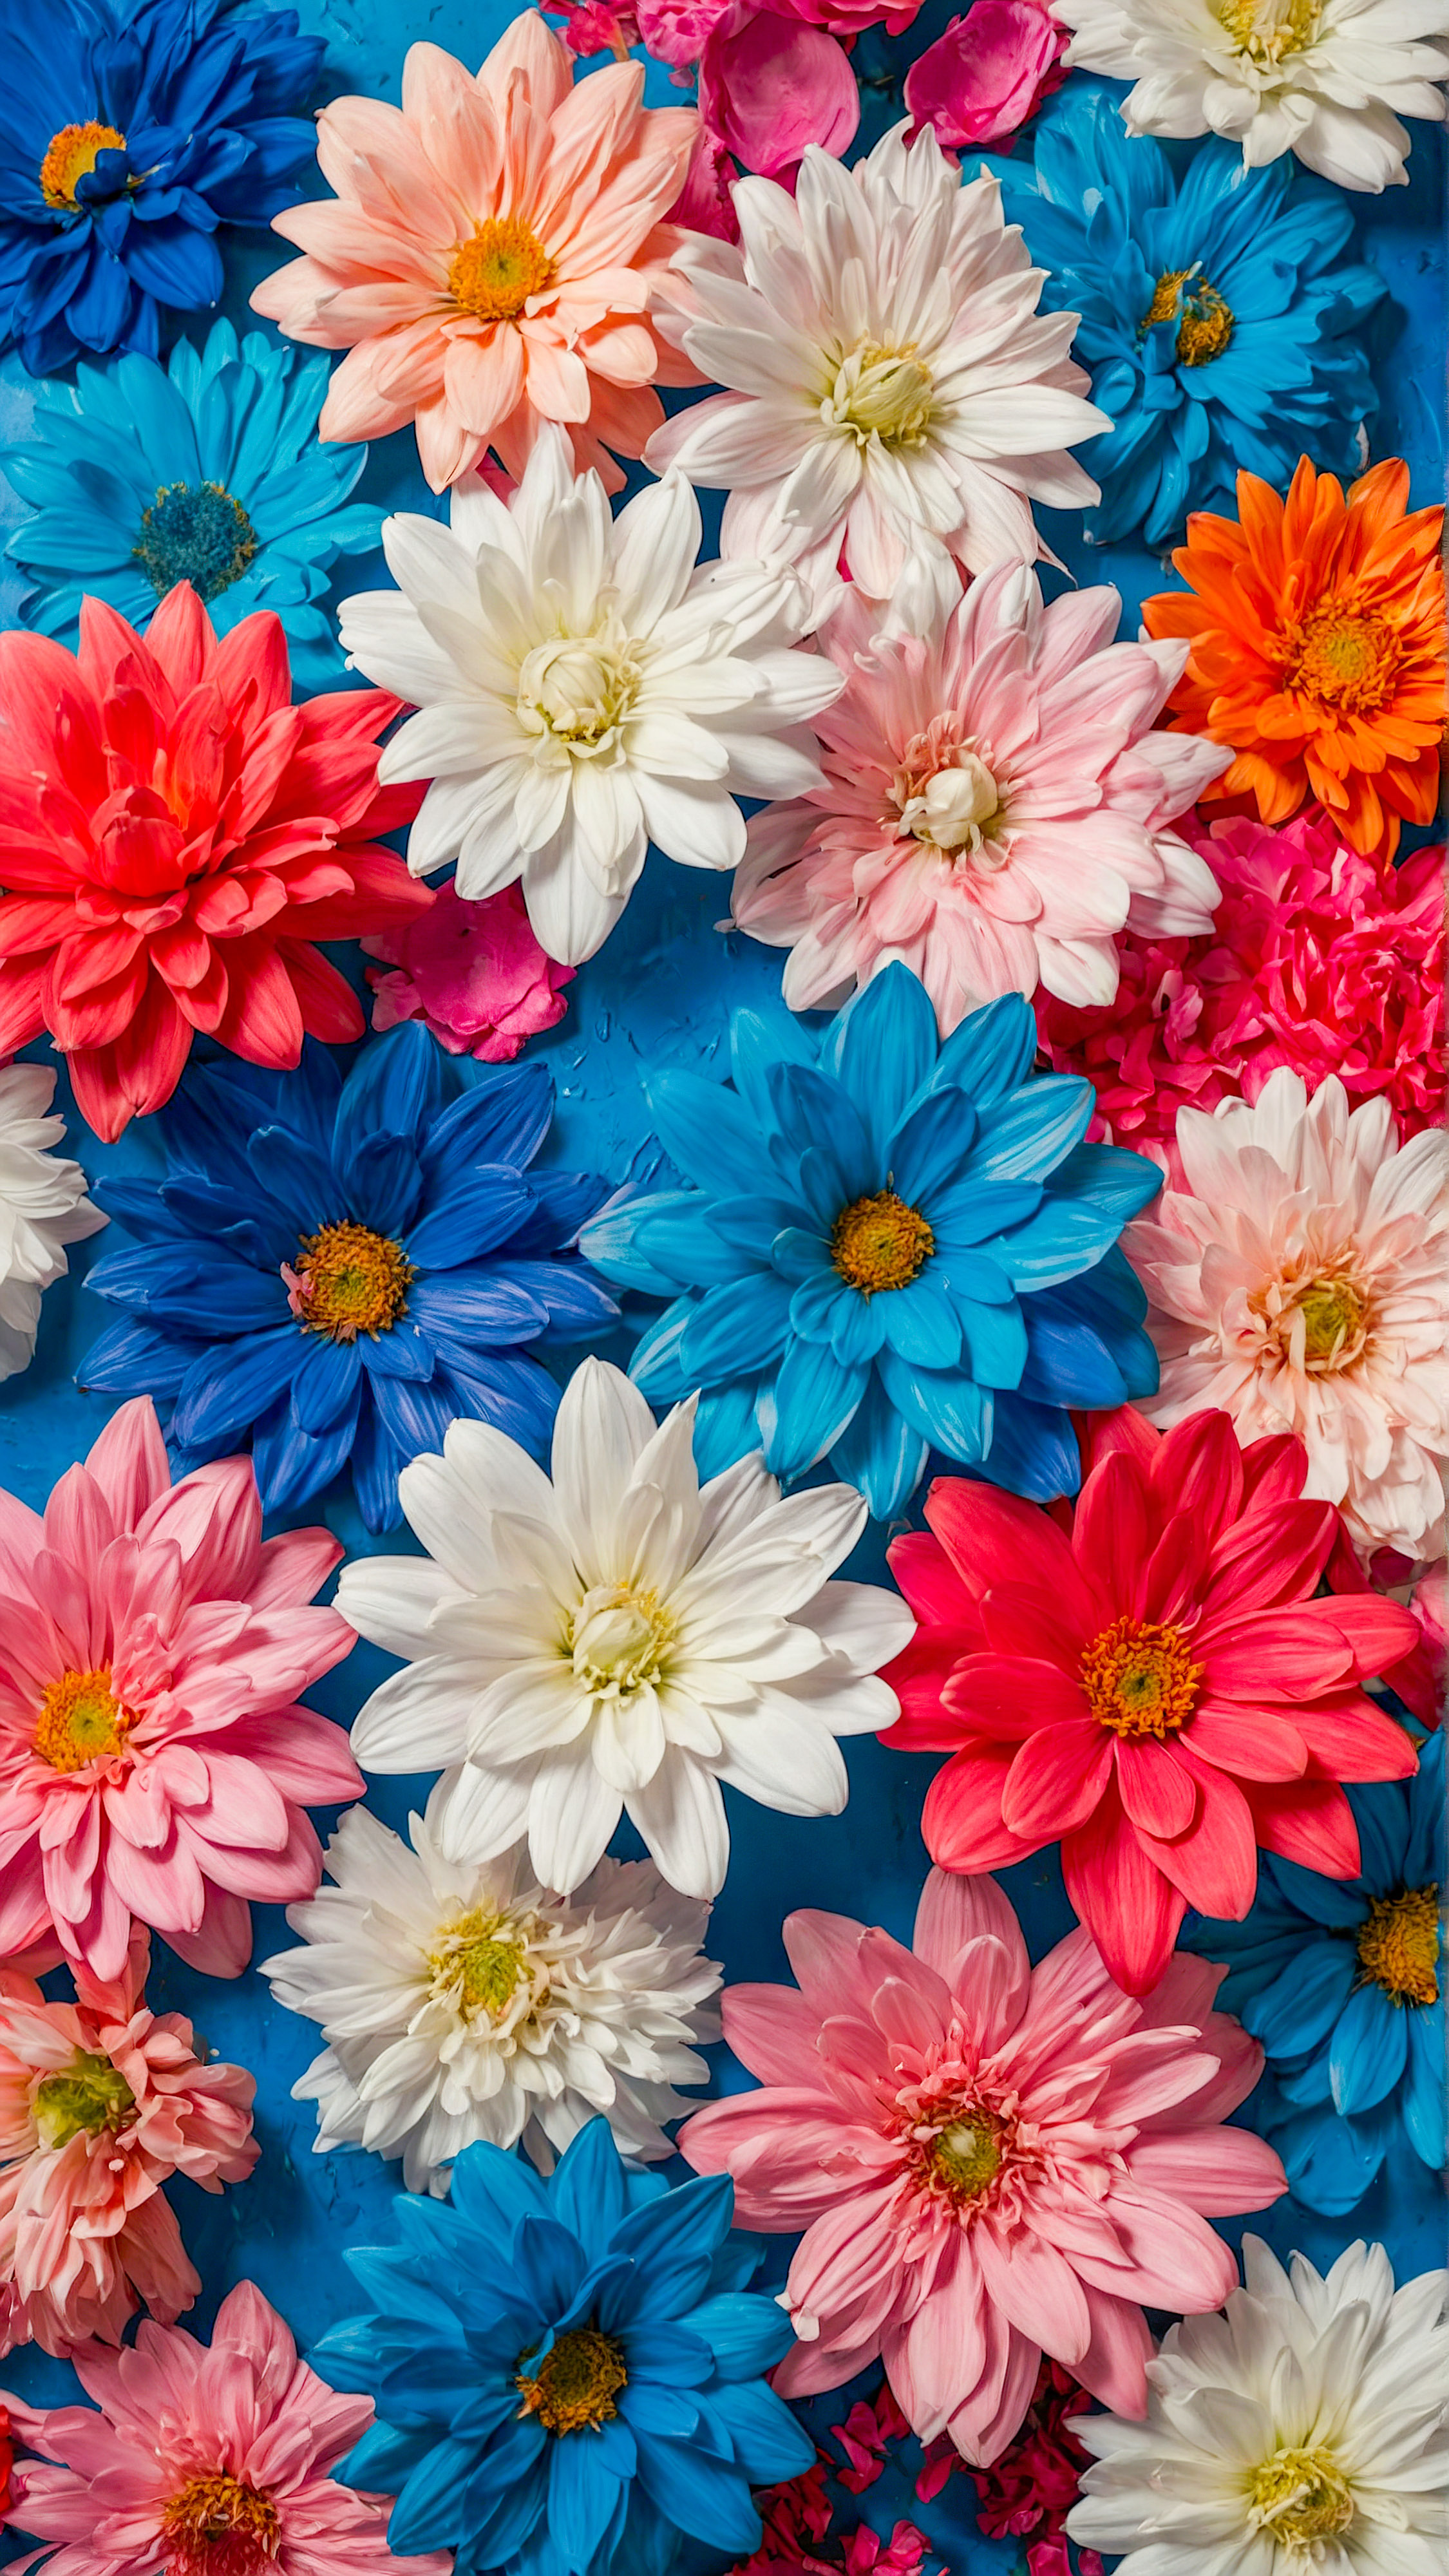 Appréciez la beauté et le style de nos arrière-plans esthétiques et mignons pour iPhone, présentant une collection de fleurs peintes vibrantes et colorées dans diverses nuances de rose, bleu et blanc, ajoutant une touche de charme naturel à votre appareil.